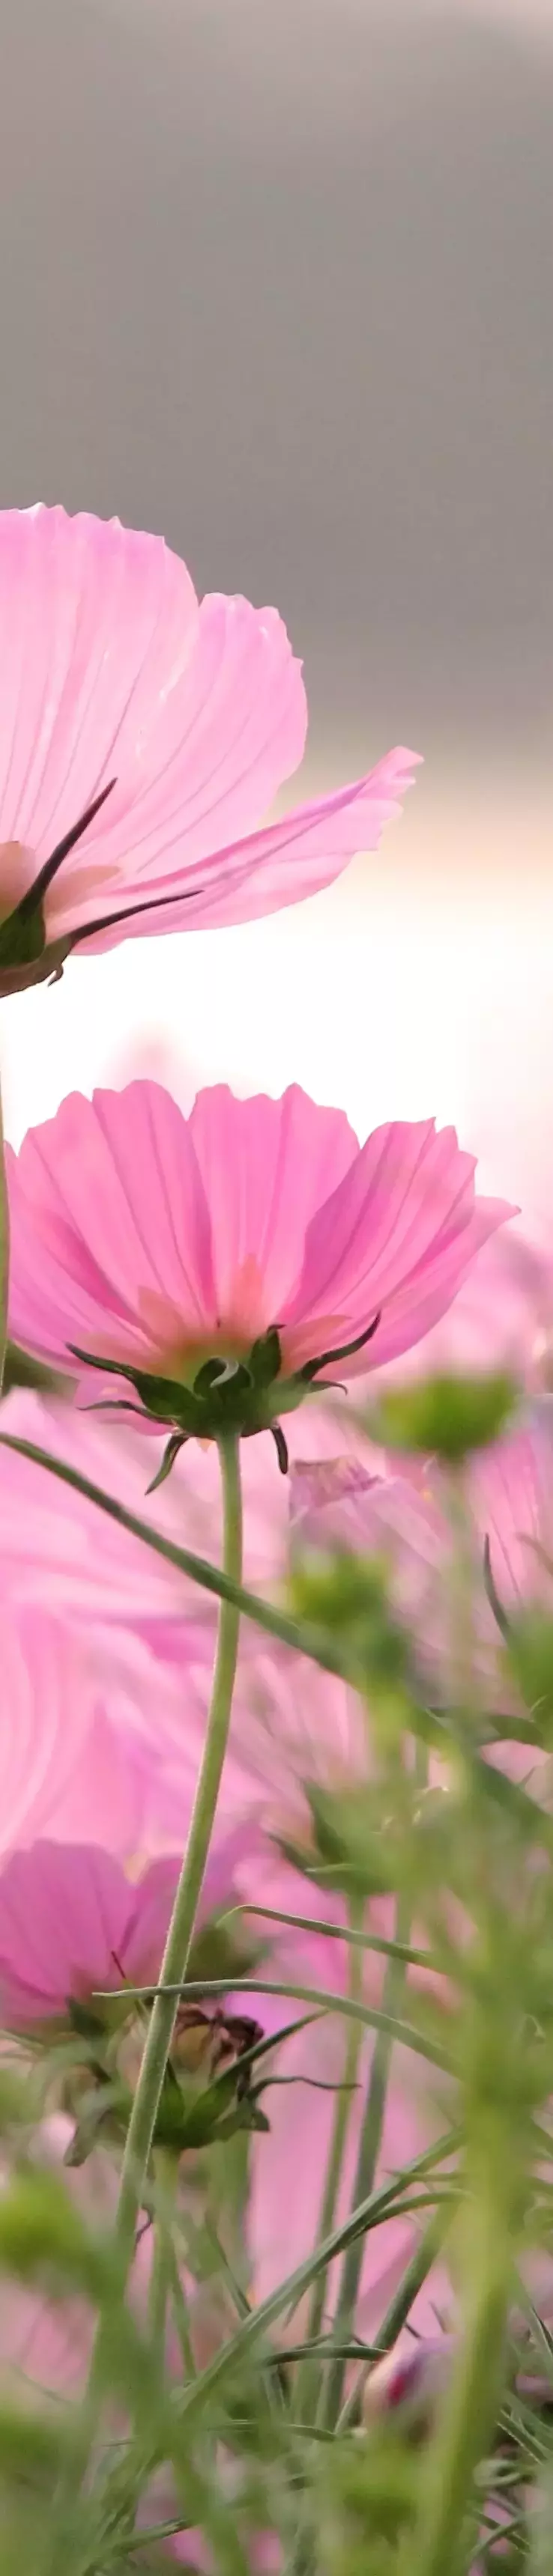 Photo d'une fleur illustrant un jardin sain et en bonne santé 